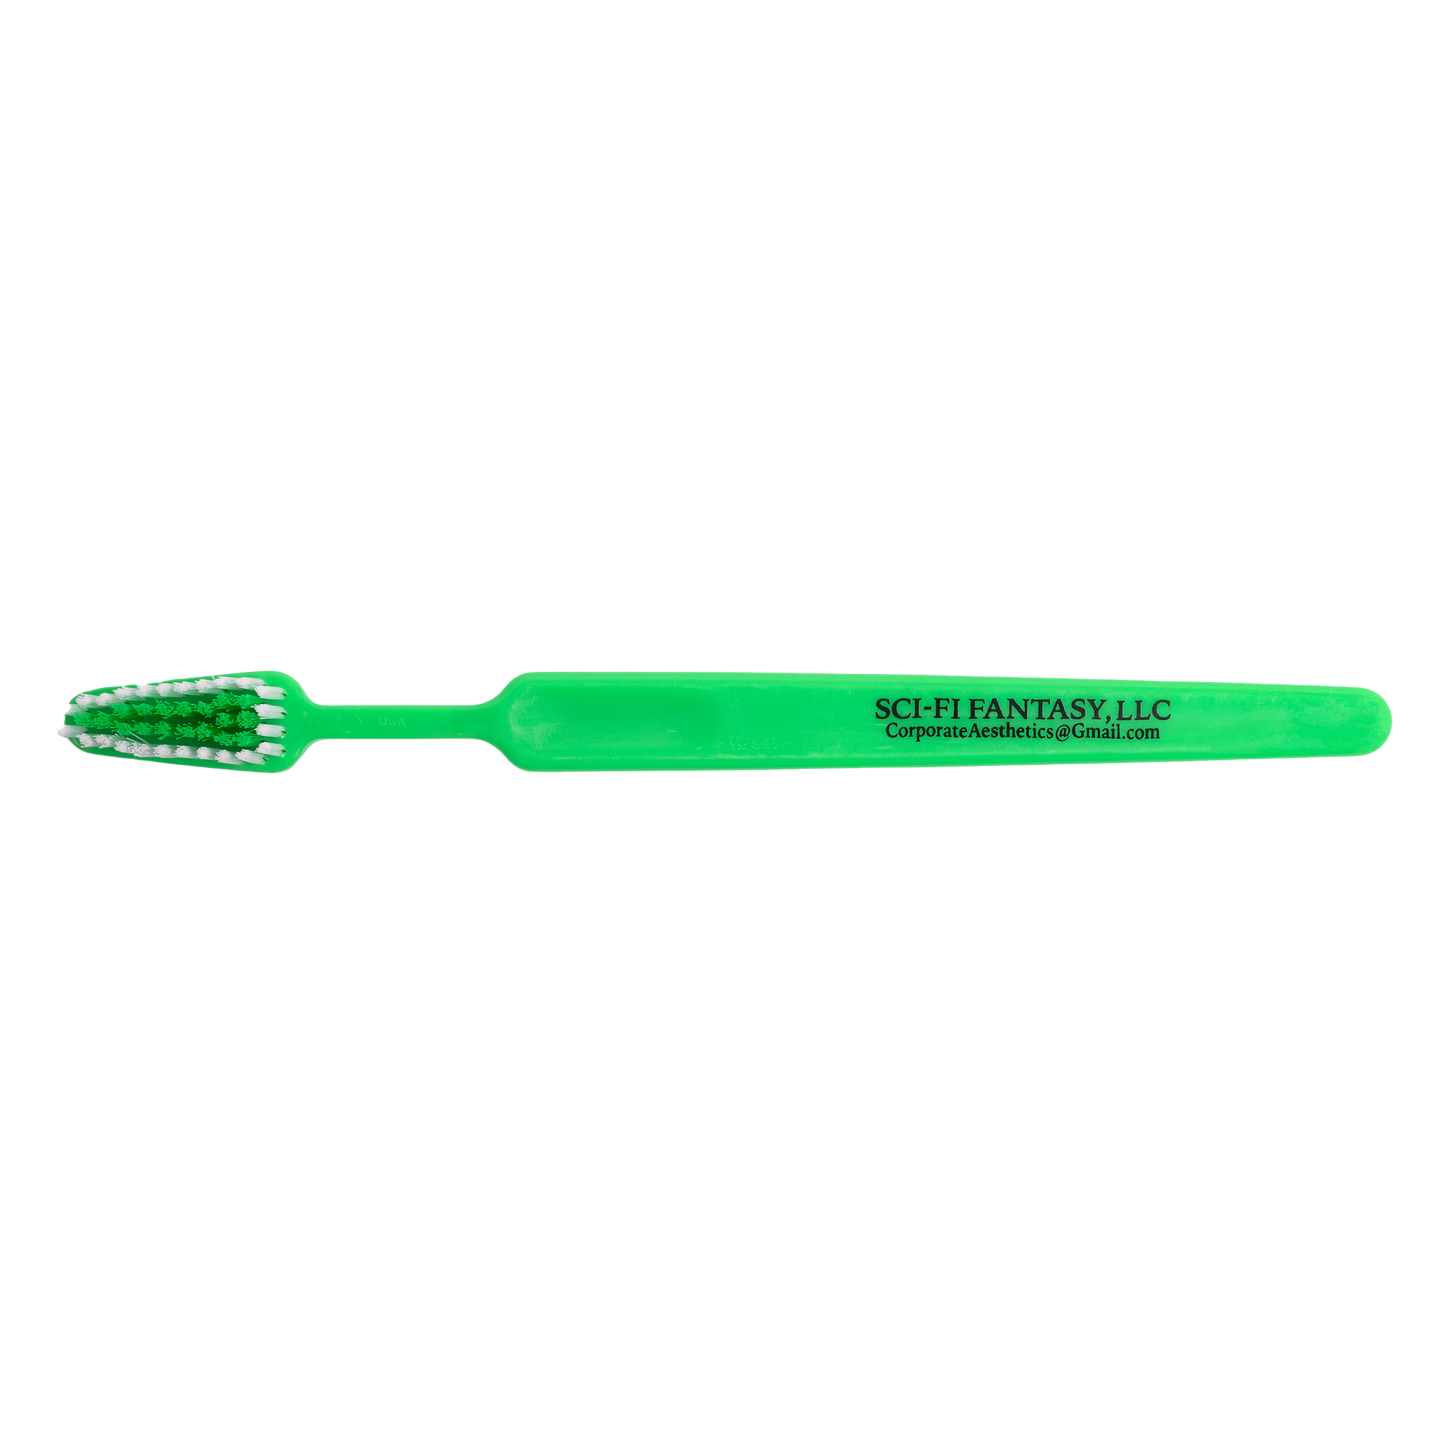 SCI-FI FANTASY - Toothbrush Green